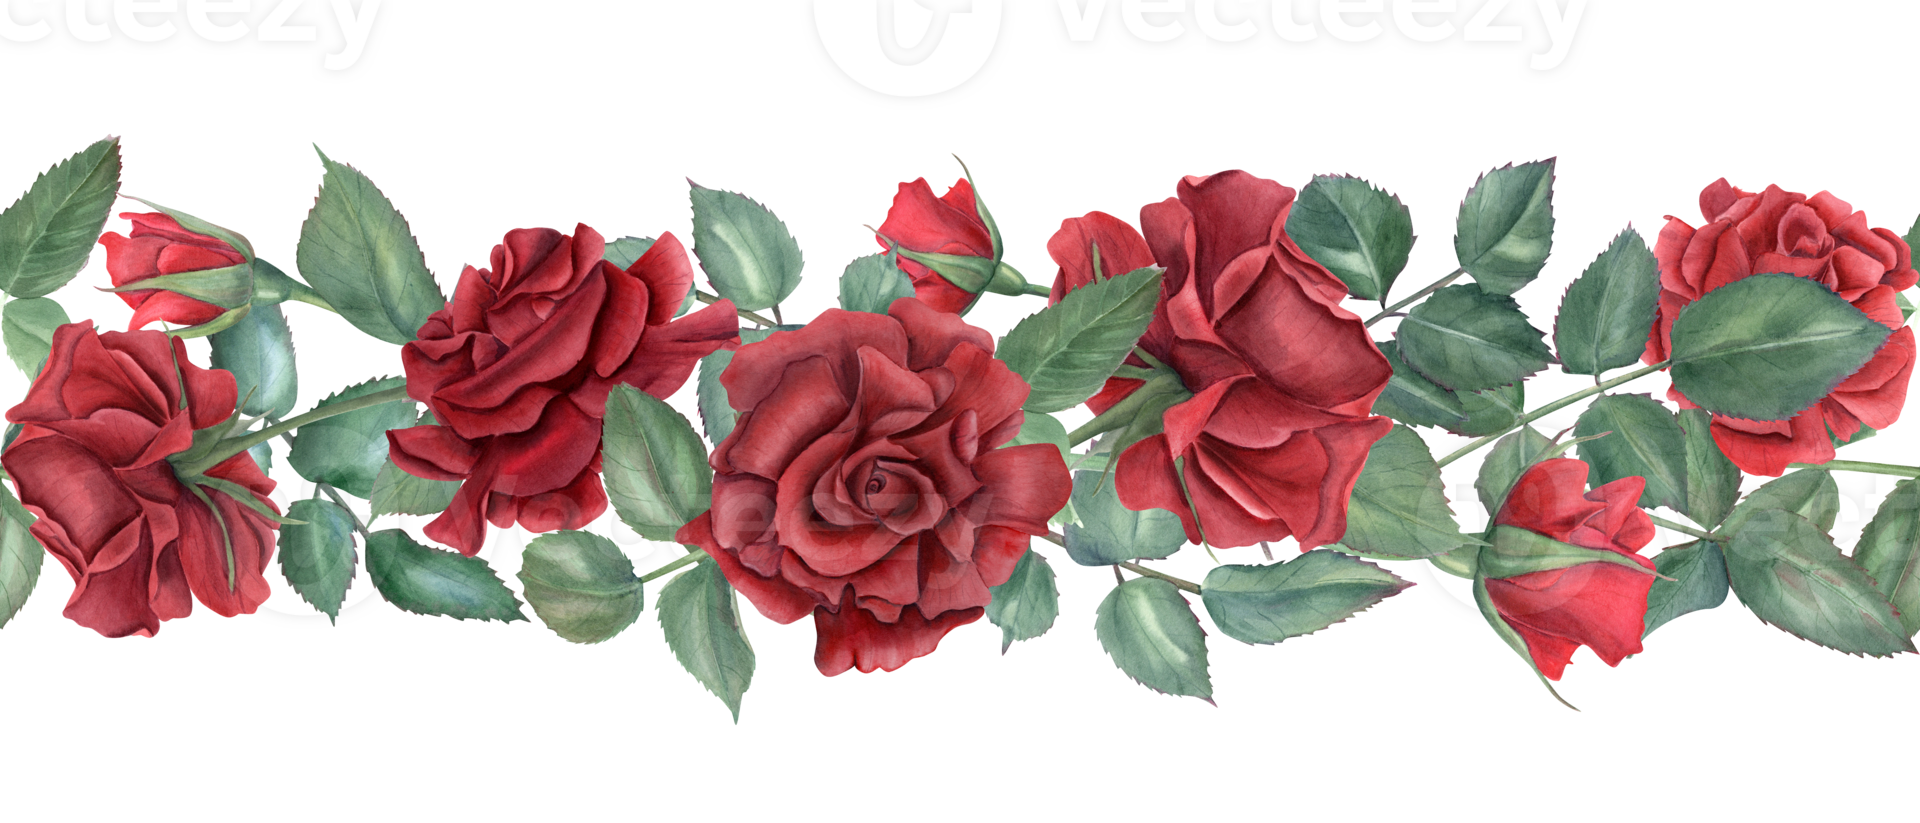 grens met rood rozen. robijn bloemen en groen bladeren. verstrengeling roos stengels met knoppen. bloeiend zomer planten. naadloos overladen. waterverf illustratie voor bruiloft ontwerp, gedenkteken dag decor png